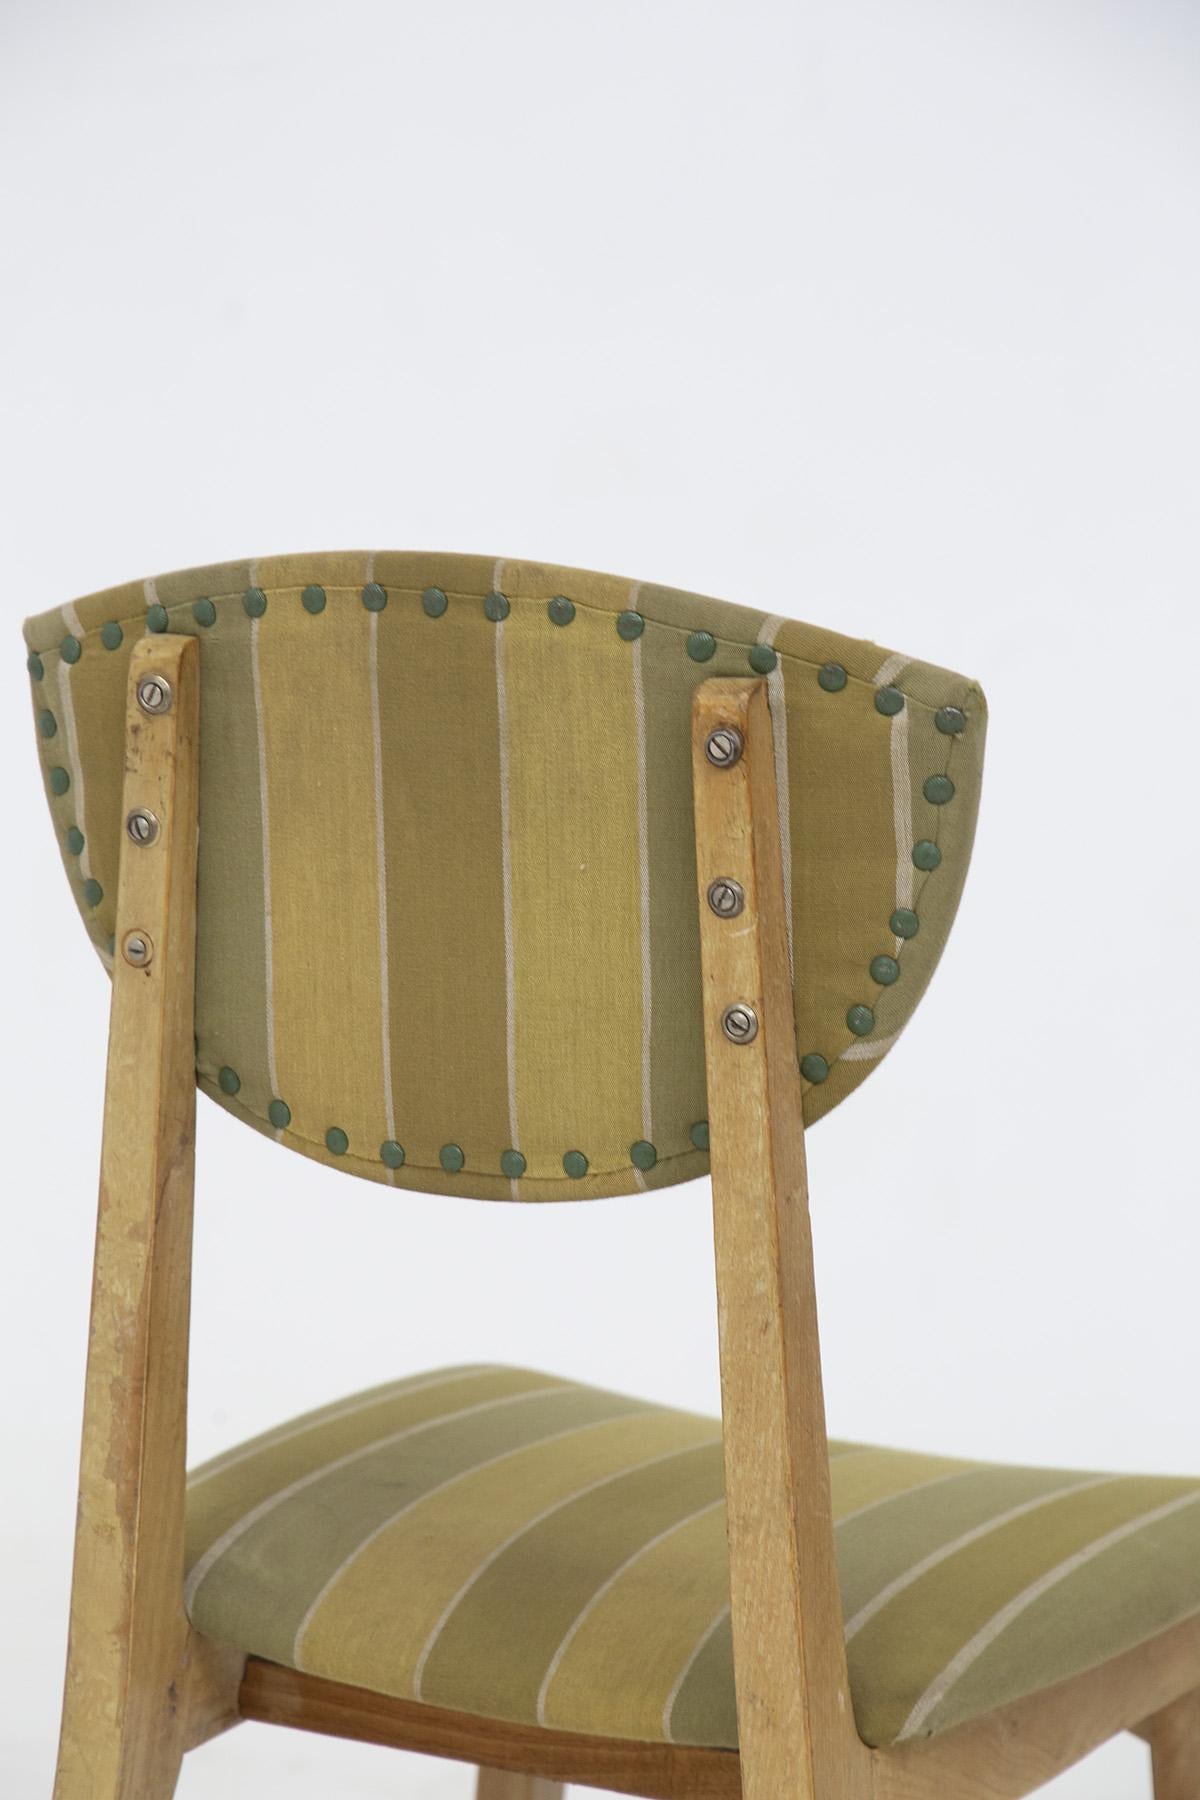 Fabelhaftes Set von vier Holzstühlen, entworfen von Melchiorre Bega in den 1950er Jahren, feine italienische Handwerkskunst.
Die Stühle haben einen sehr schönen und haltbaren Rahmen aus hellem Holz. Die tragende Struktur wird von 4 Beinen gestützt,